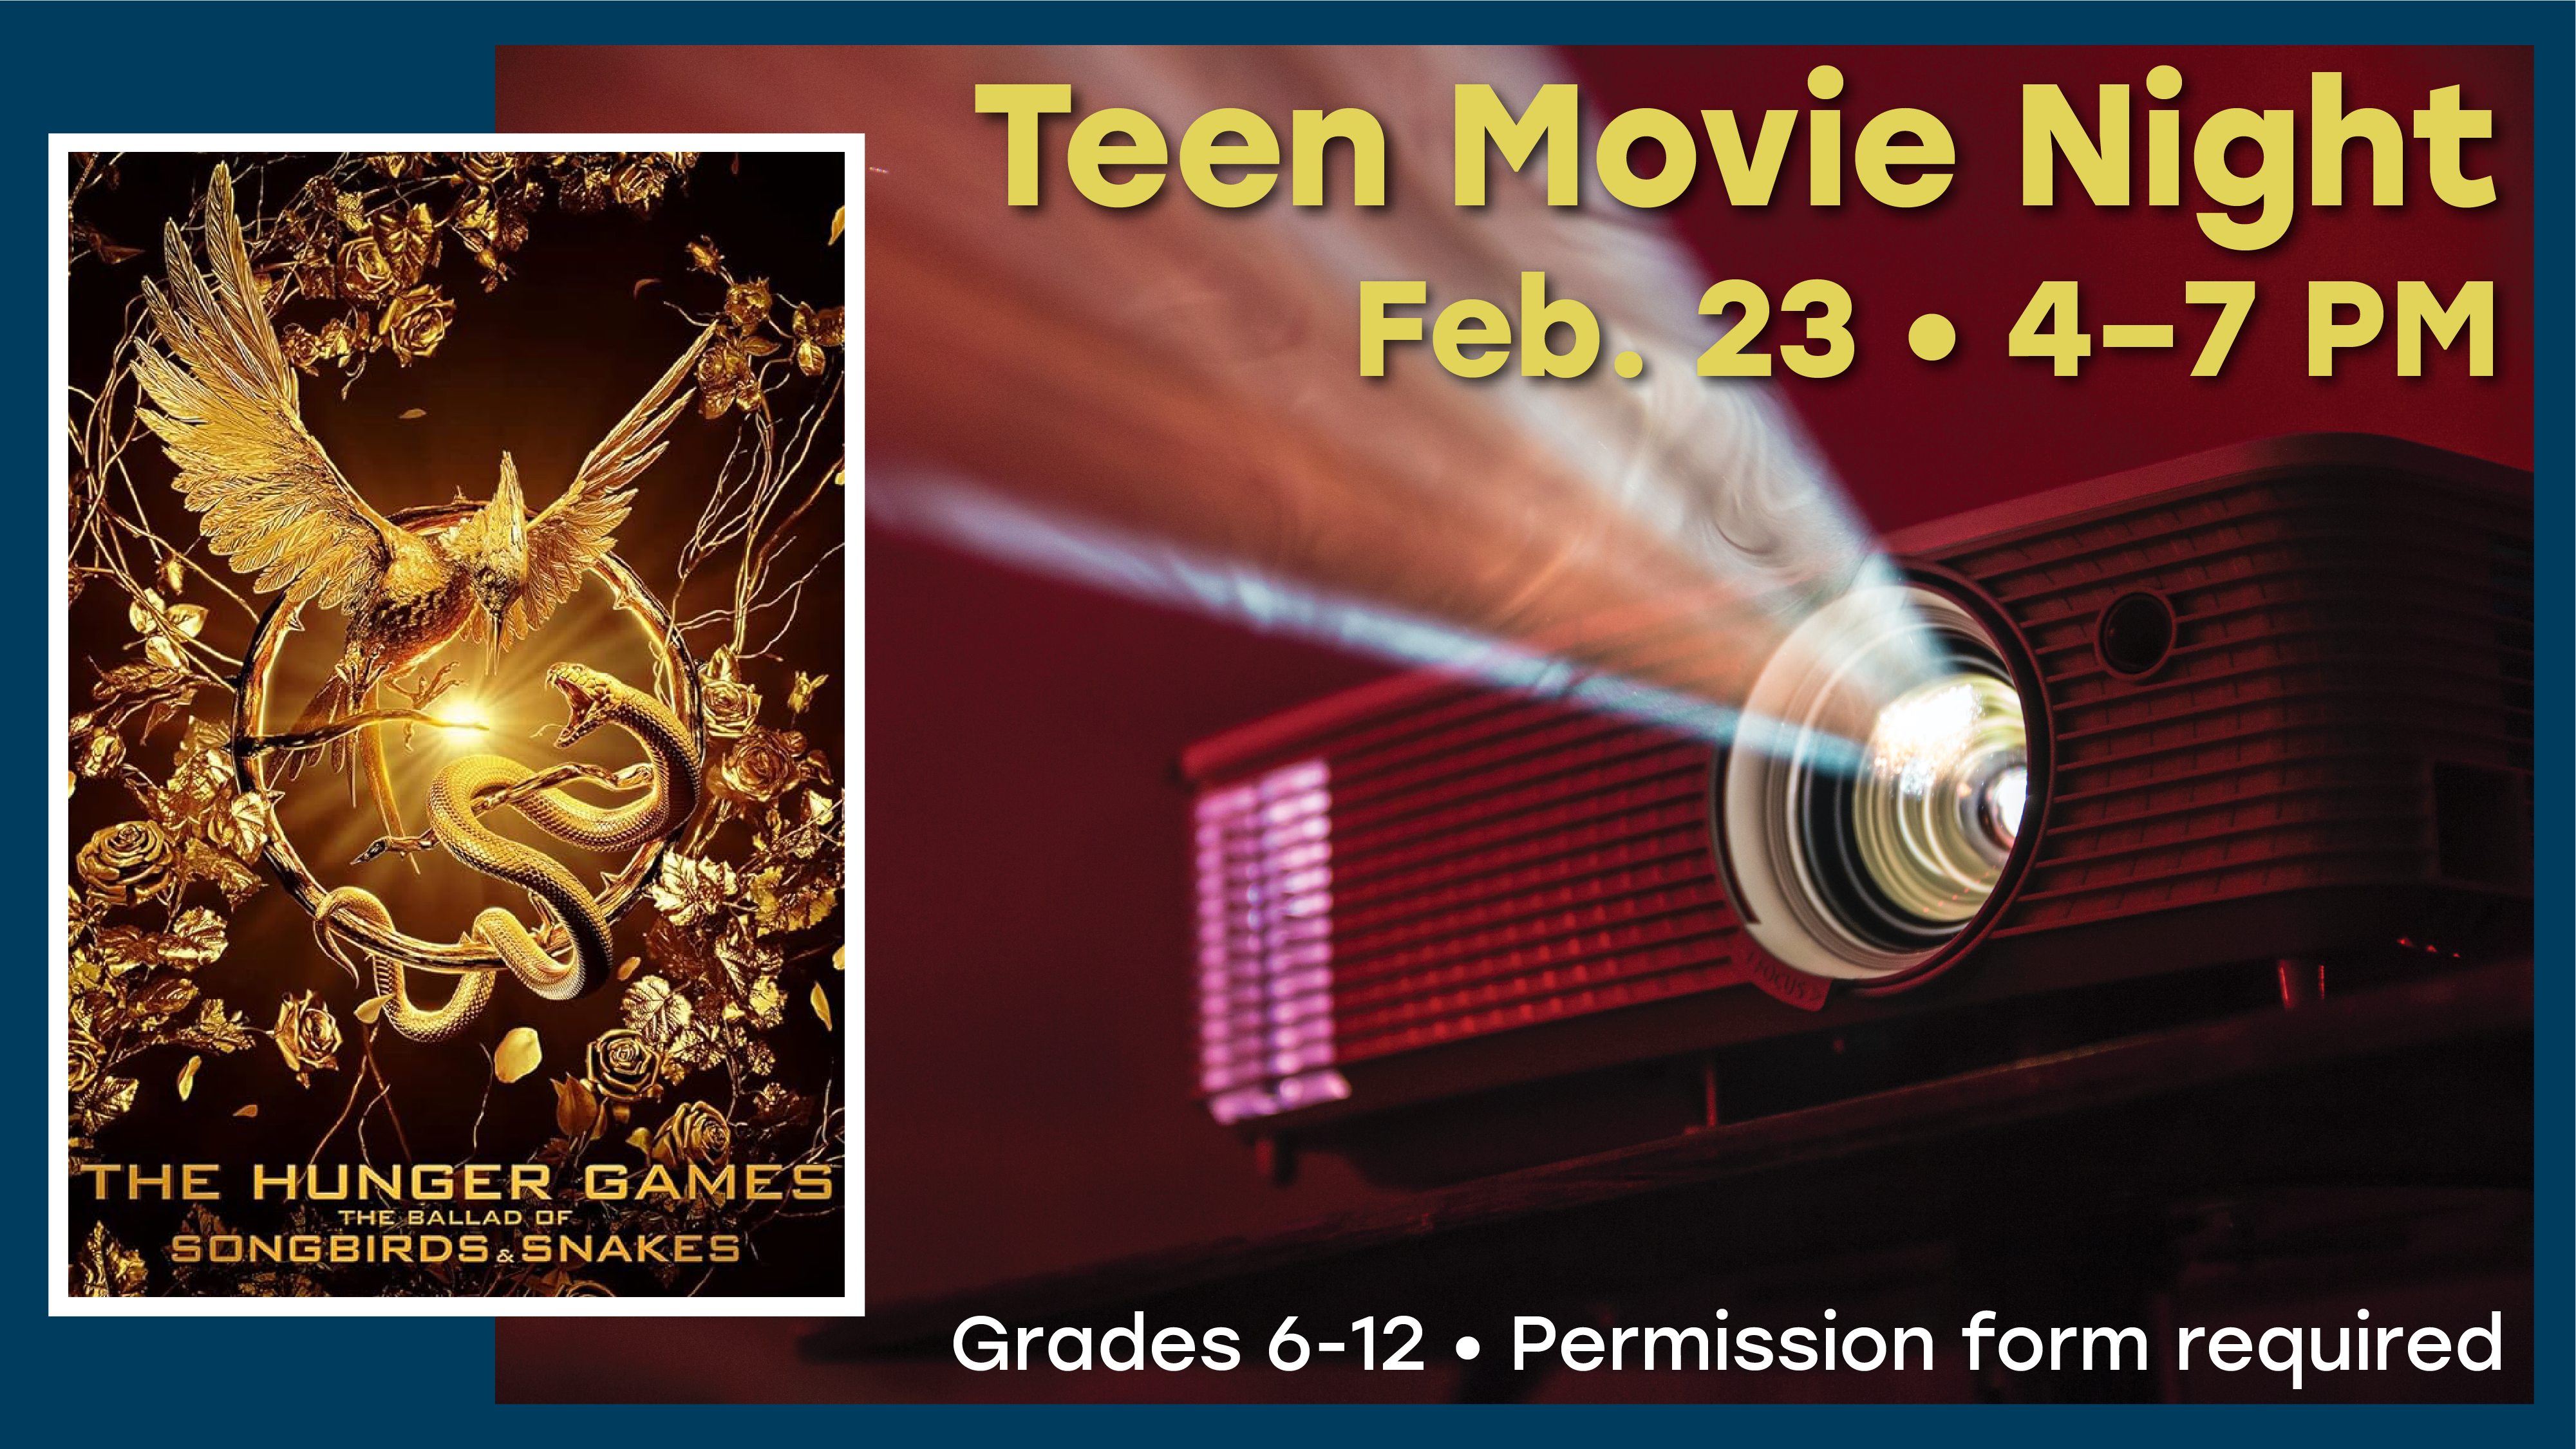 Teen Movie Night, February 23, 4-7 PM